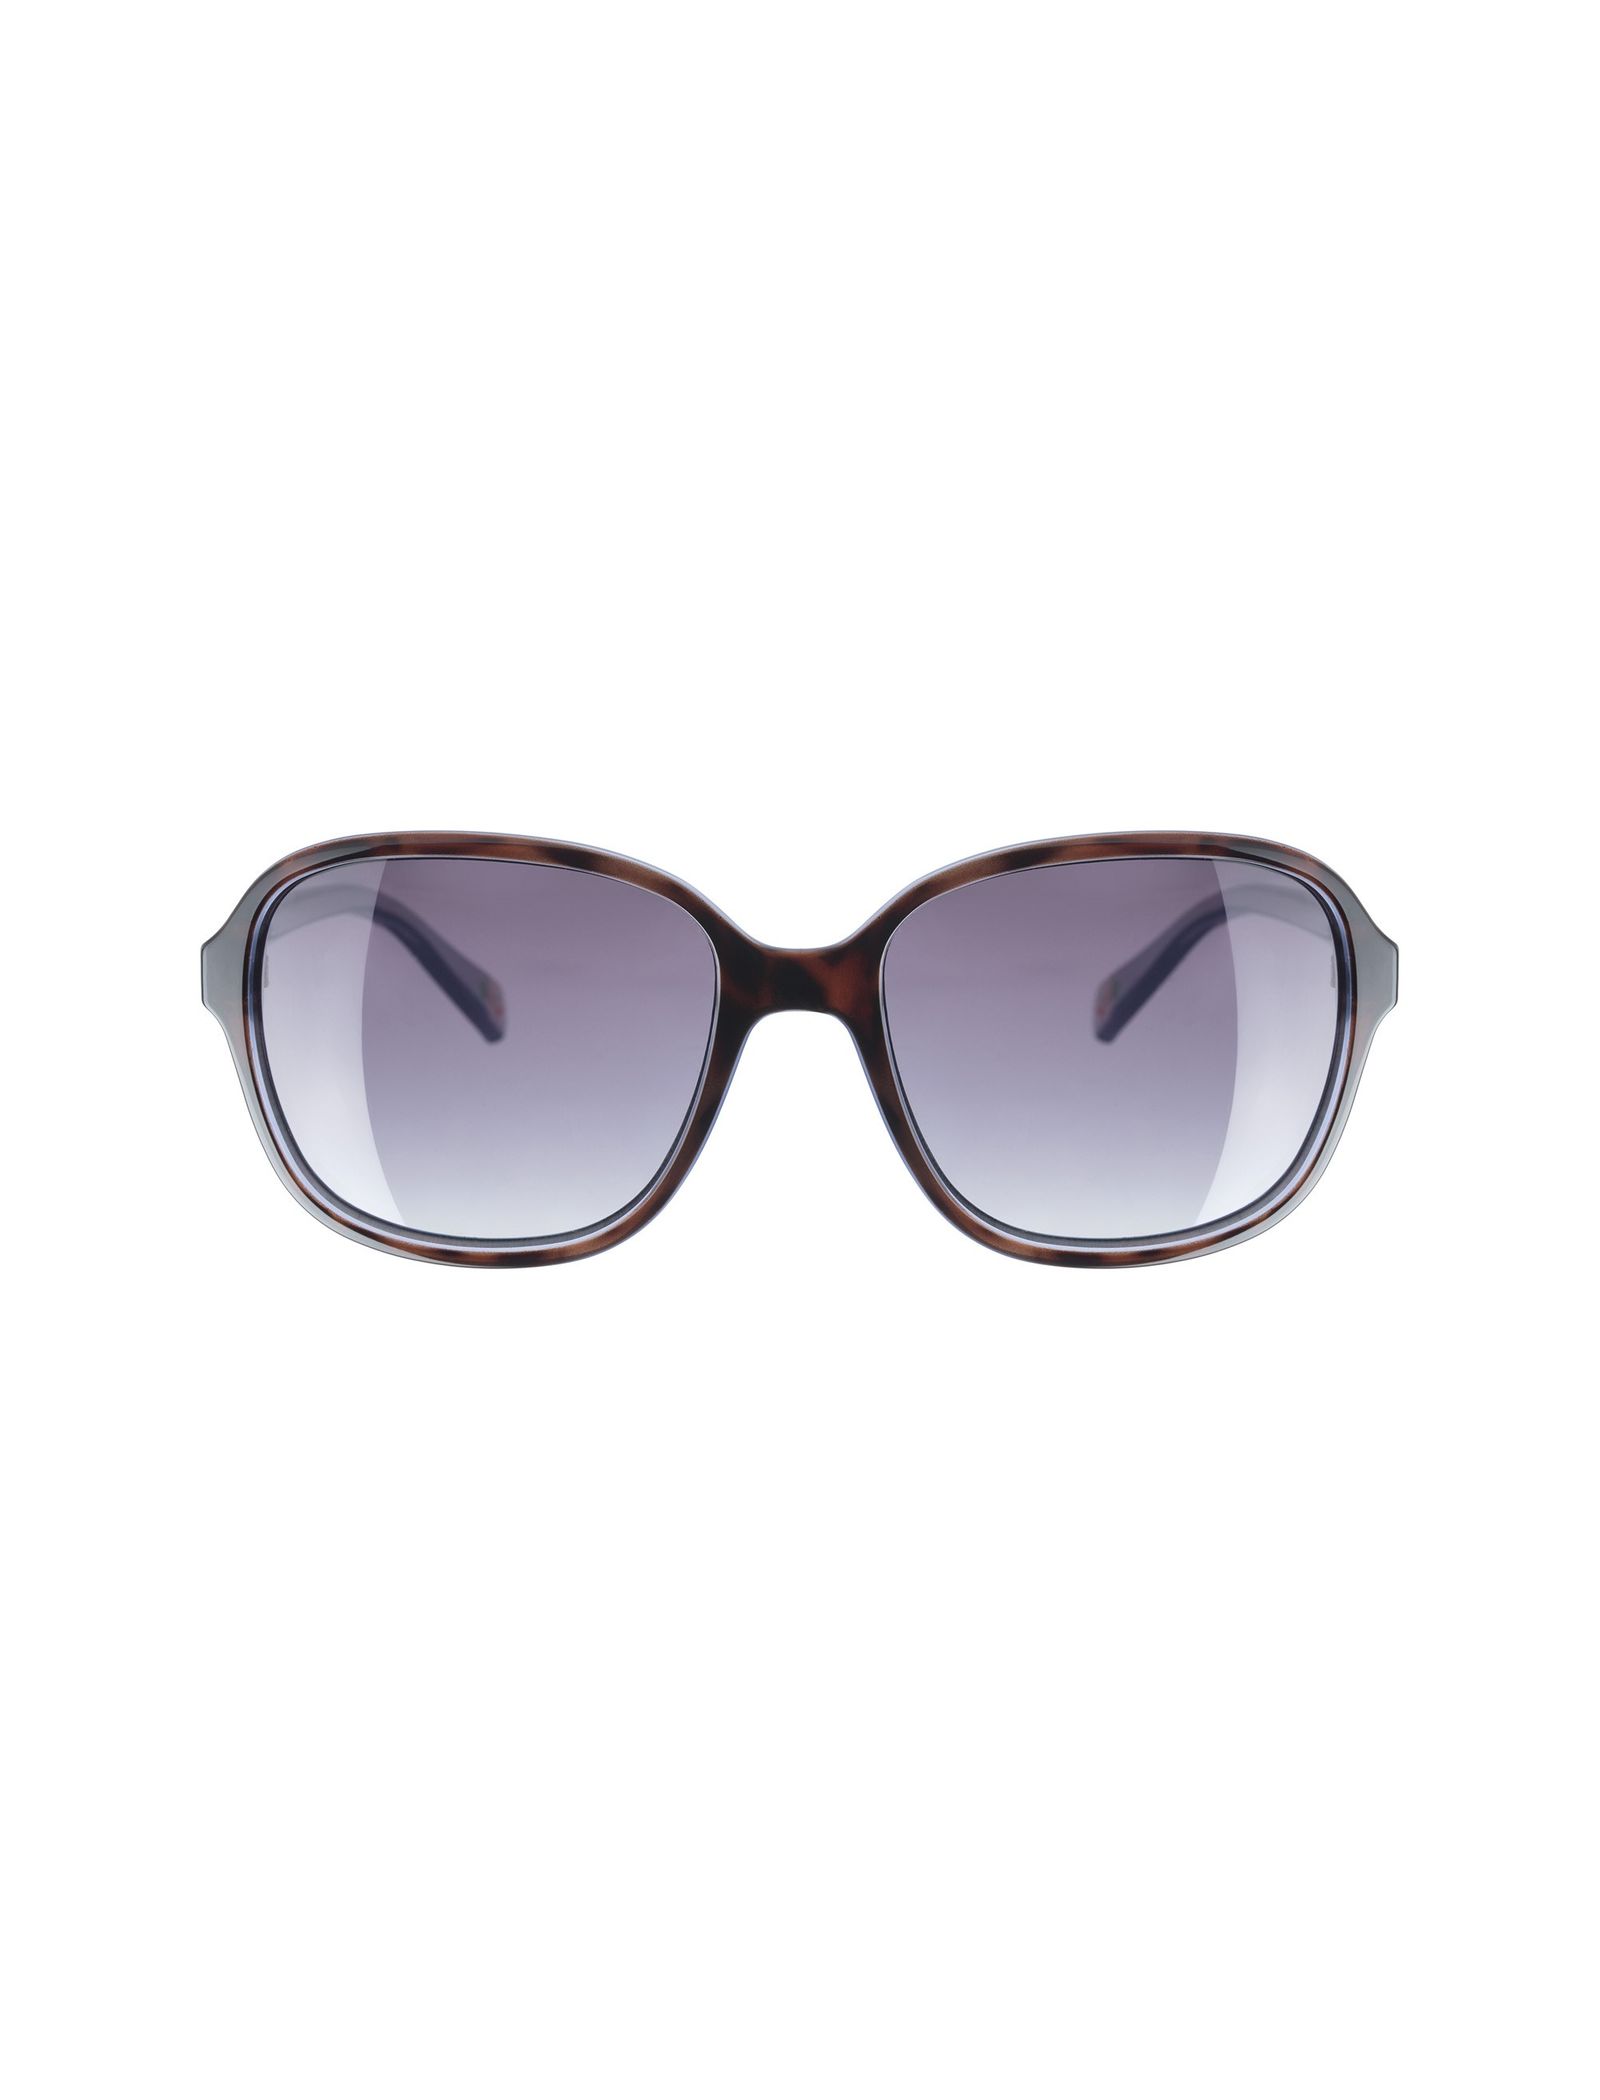 عینک آفتابی زنانه کت کیتسون مدل CK501010455 - قهوه ای و آبی - 1